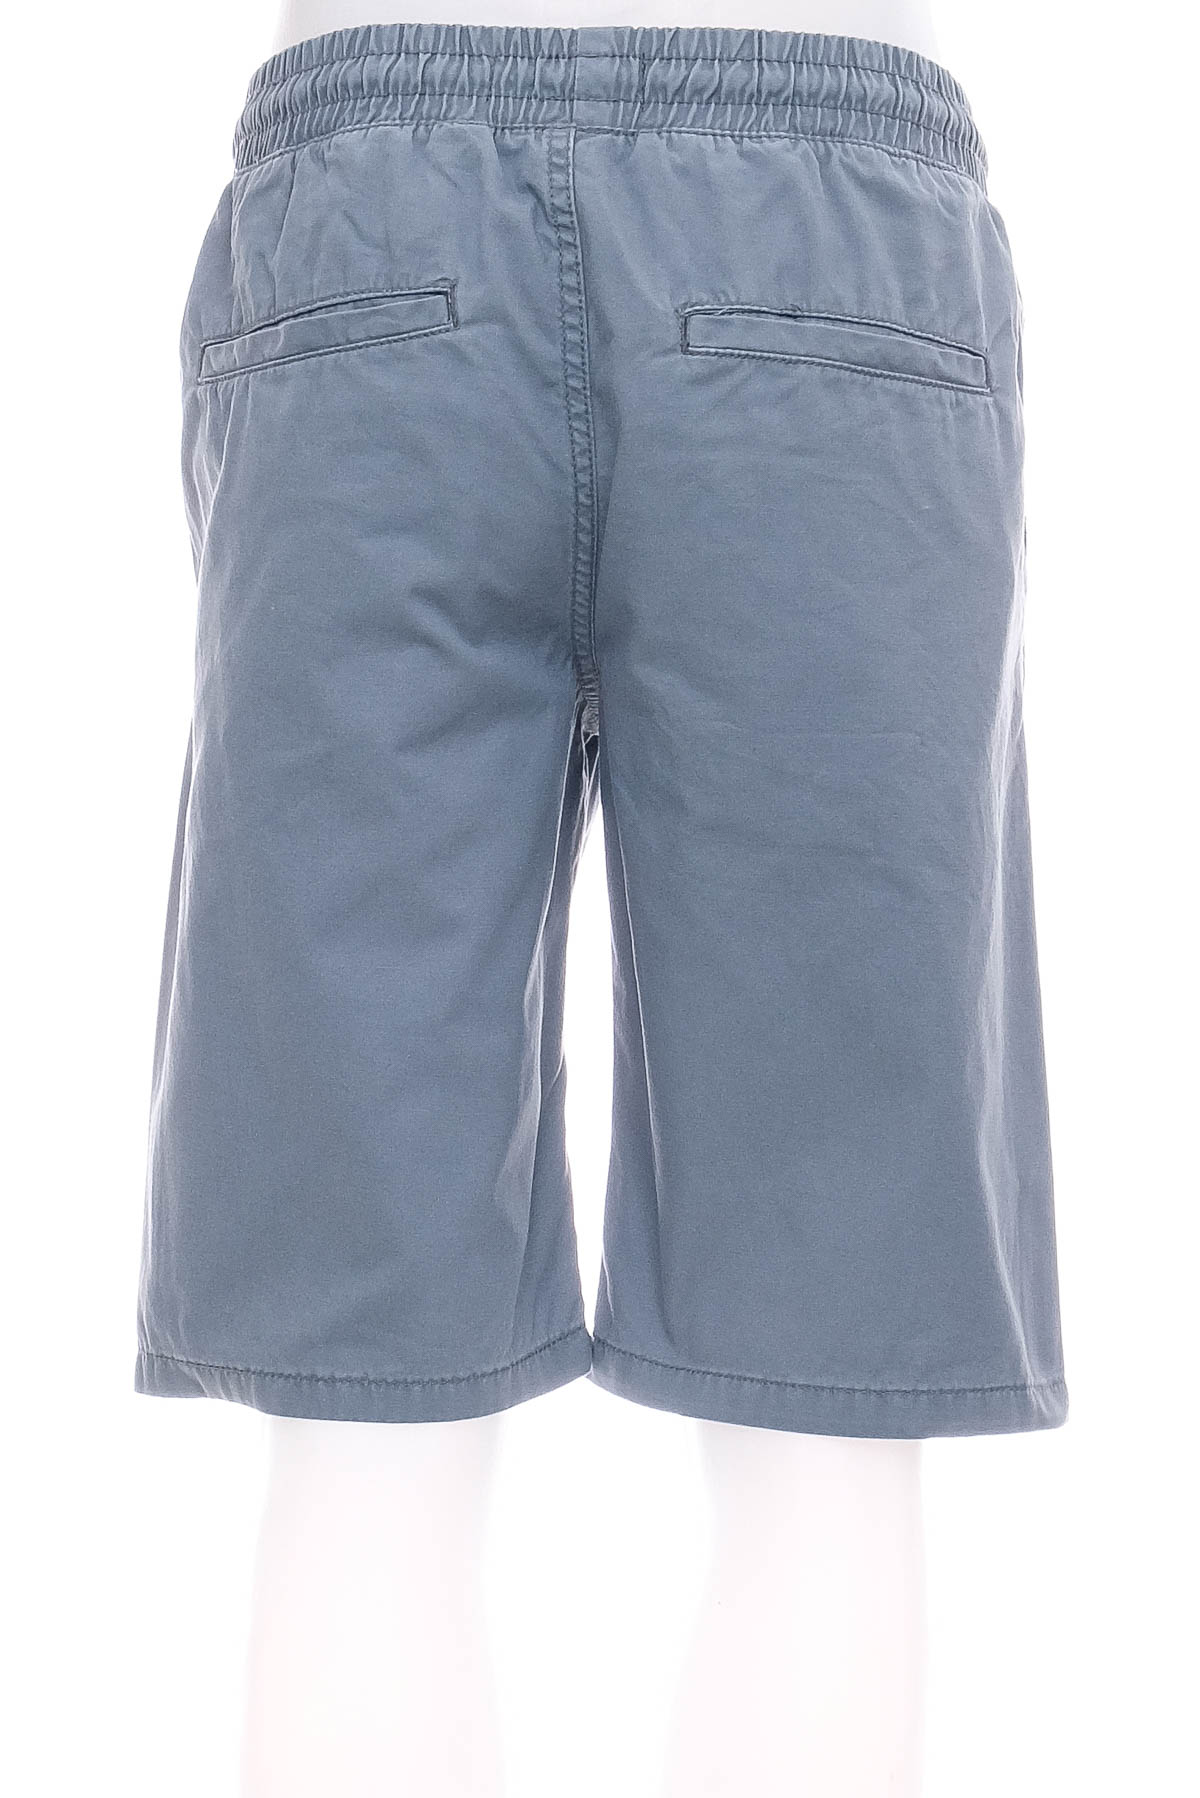 Pantaloni scurți bărbați - FSBN - 1